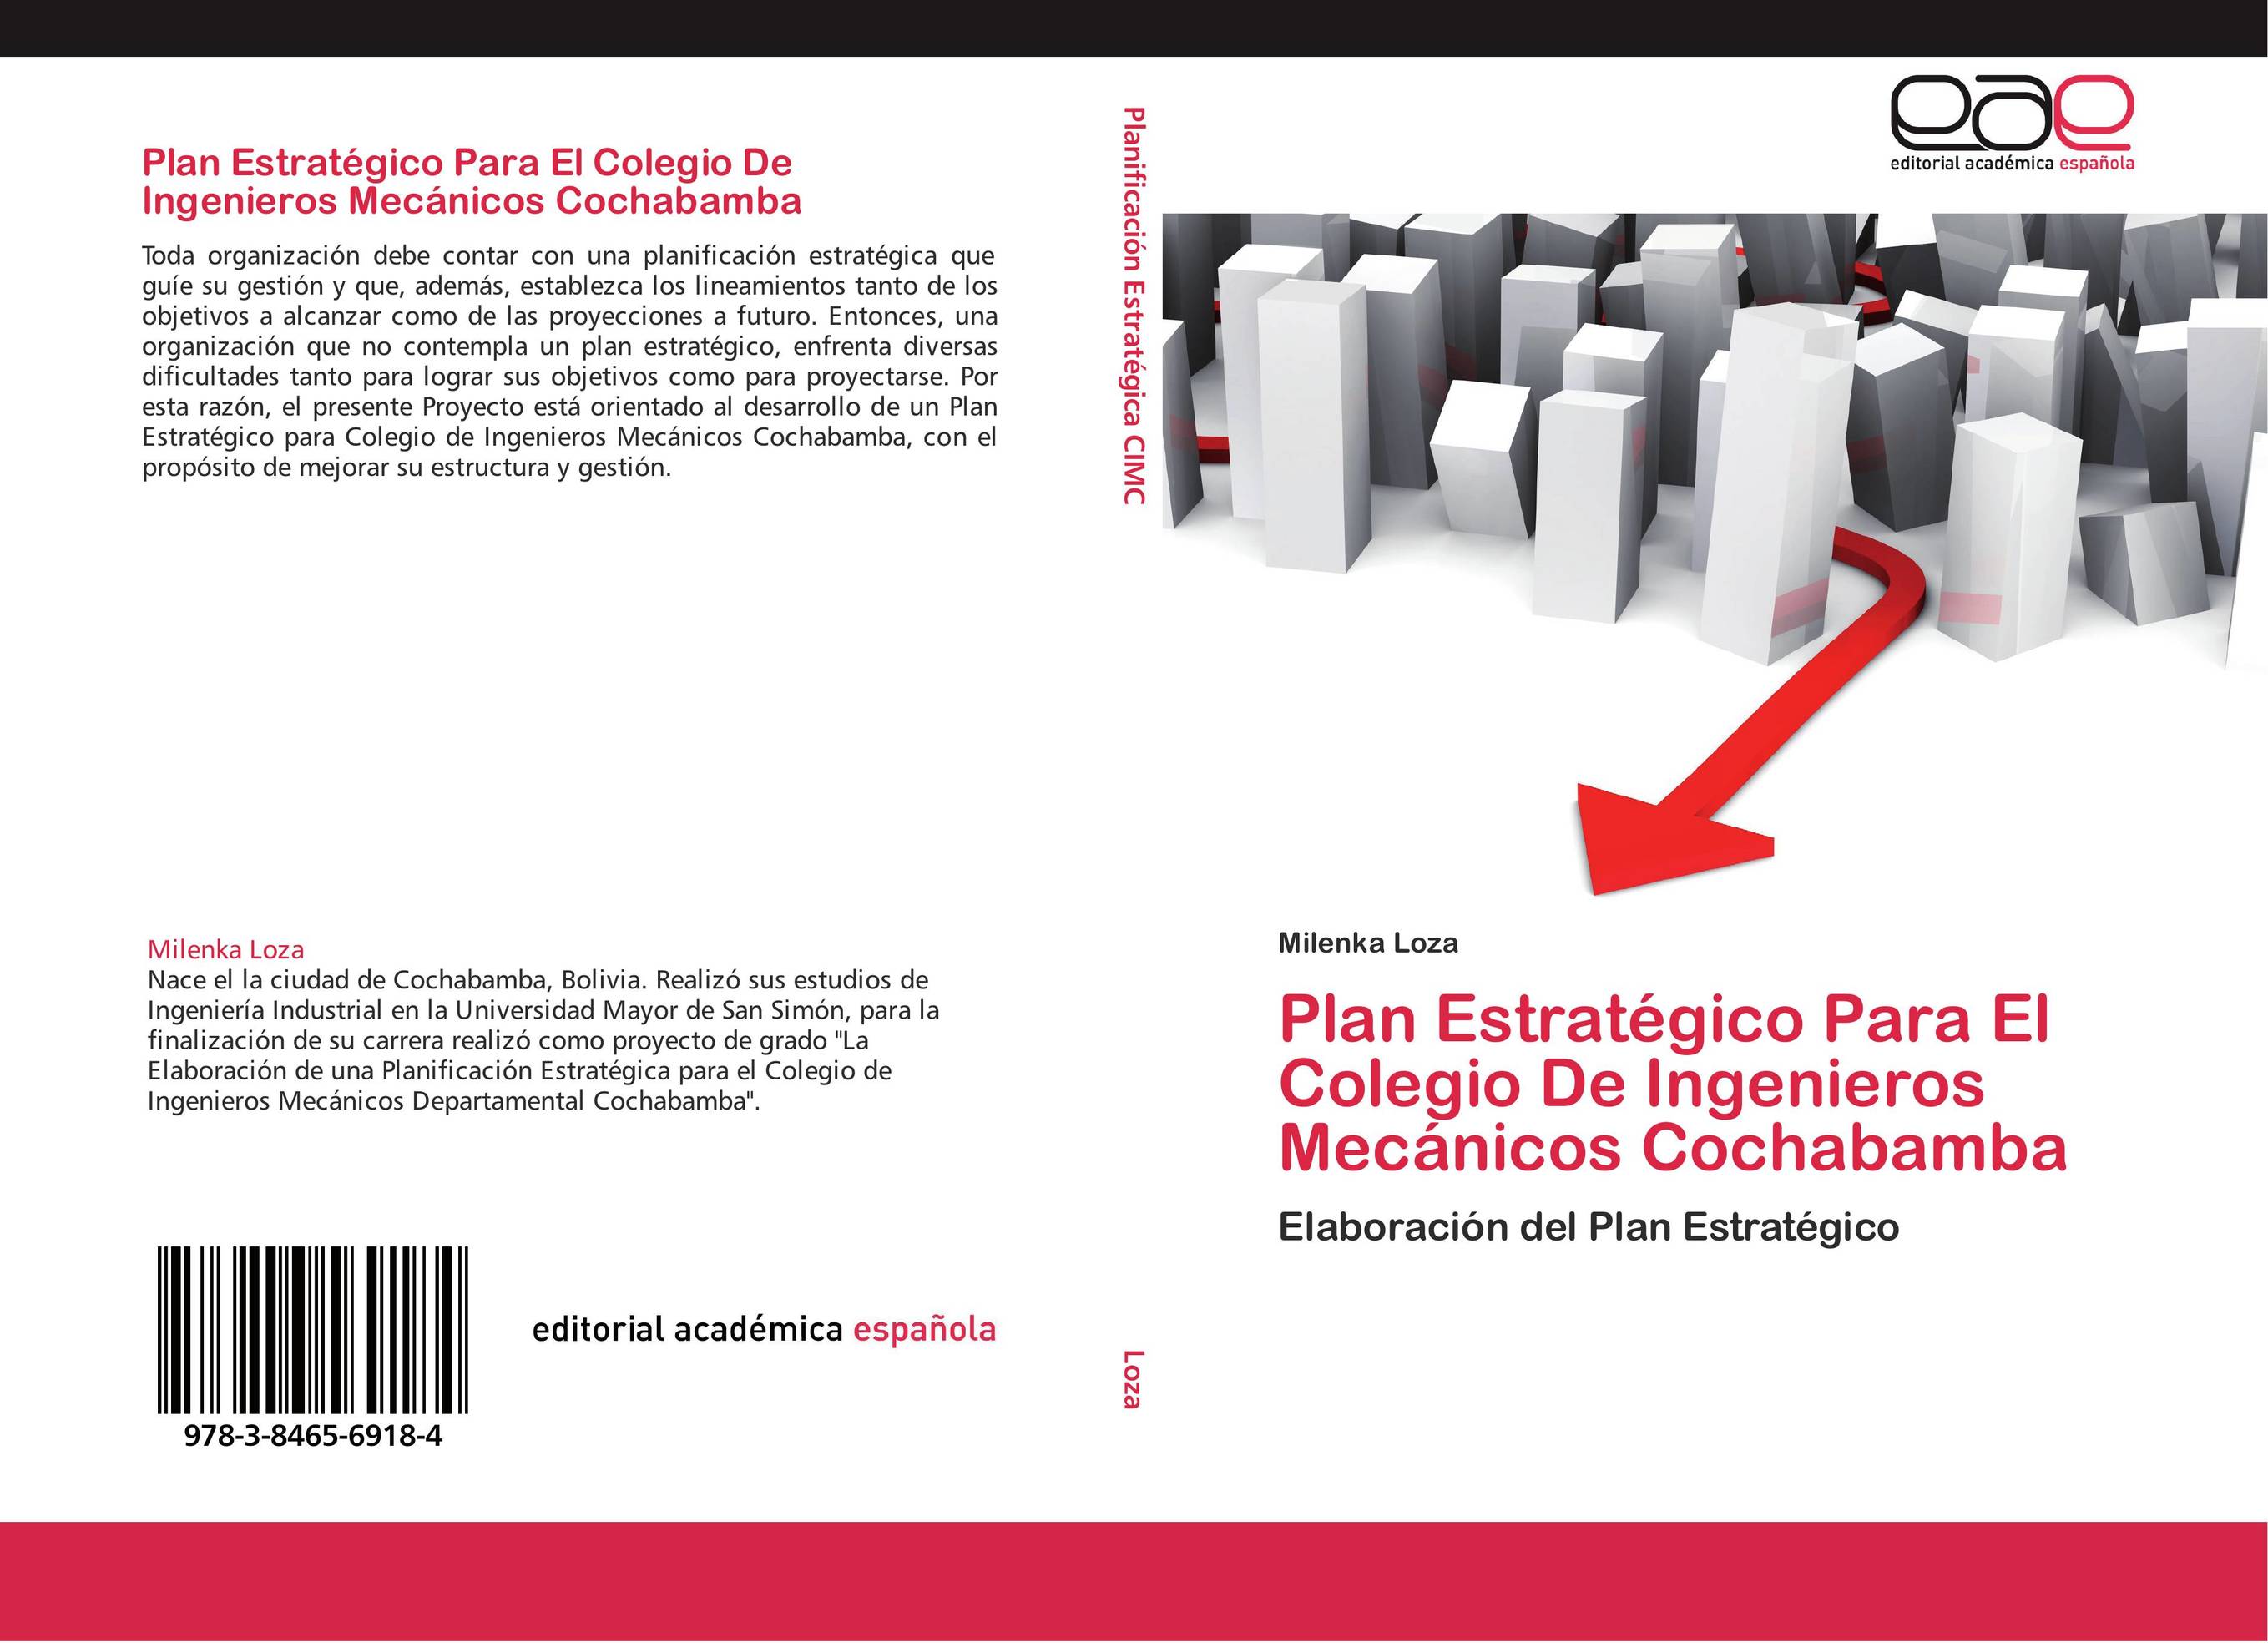 Plan Estratégico Para El Colegio De Ingenieros Mecánicos Cochabamba